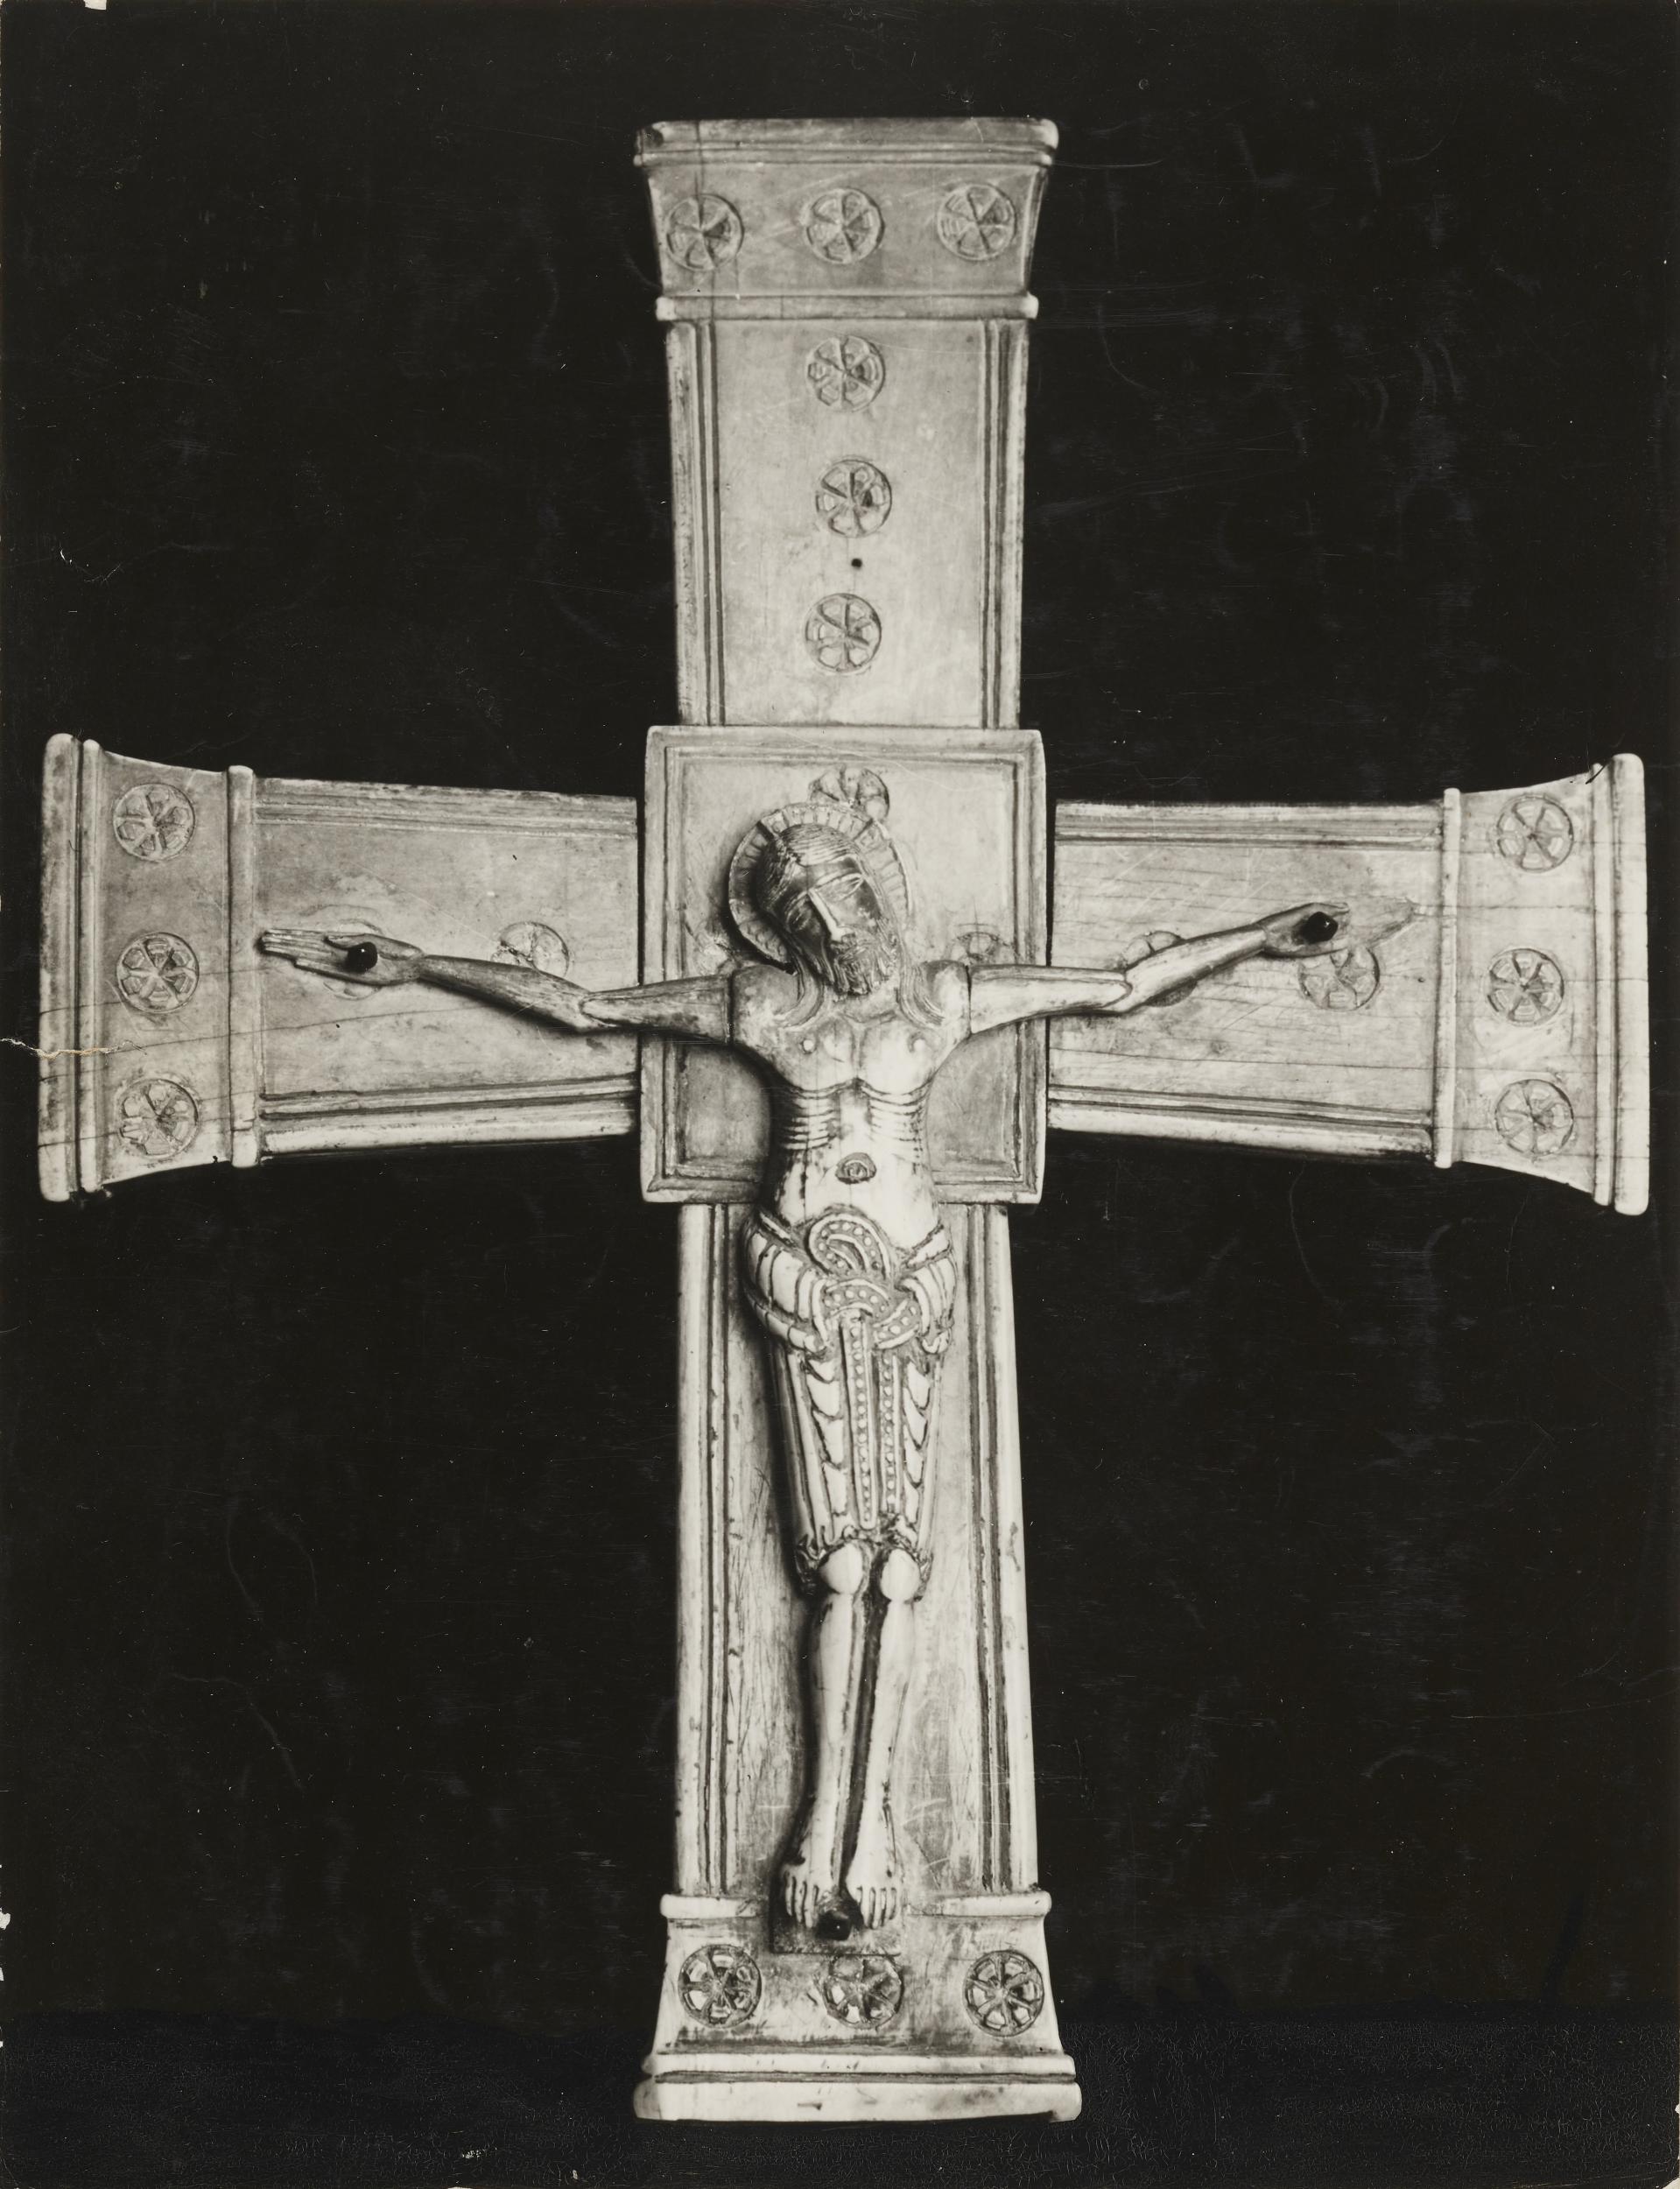 Fotografo non identificato, Canosa di Puglia - Chiesa di S. Sabino, crocifisso, 1926-1950, gelatina ai sali d'argento/carta, MPI143585